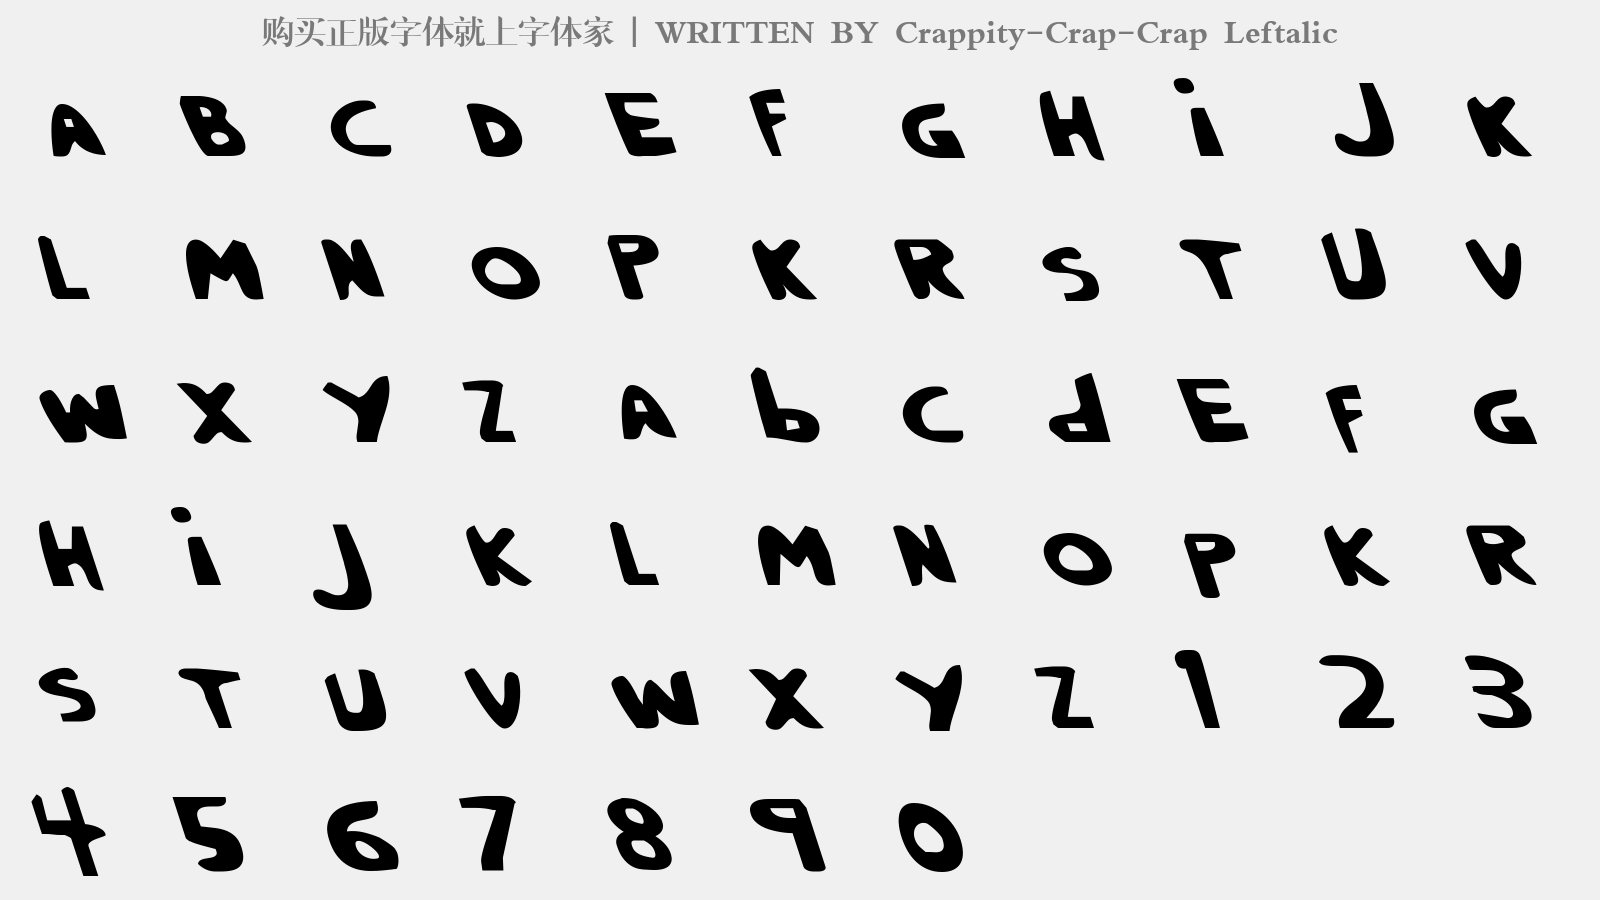 Crappity-Crap-Crap Leftalic - 大写字母/小写字母/数字